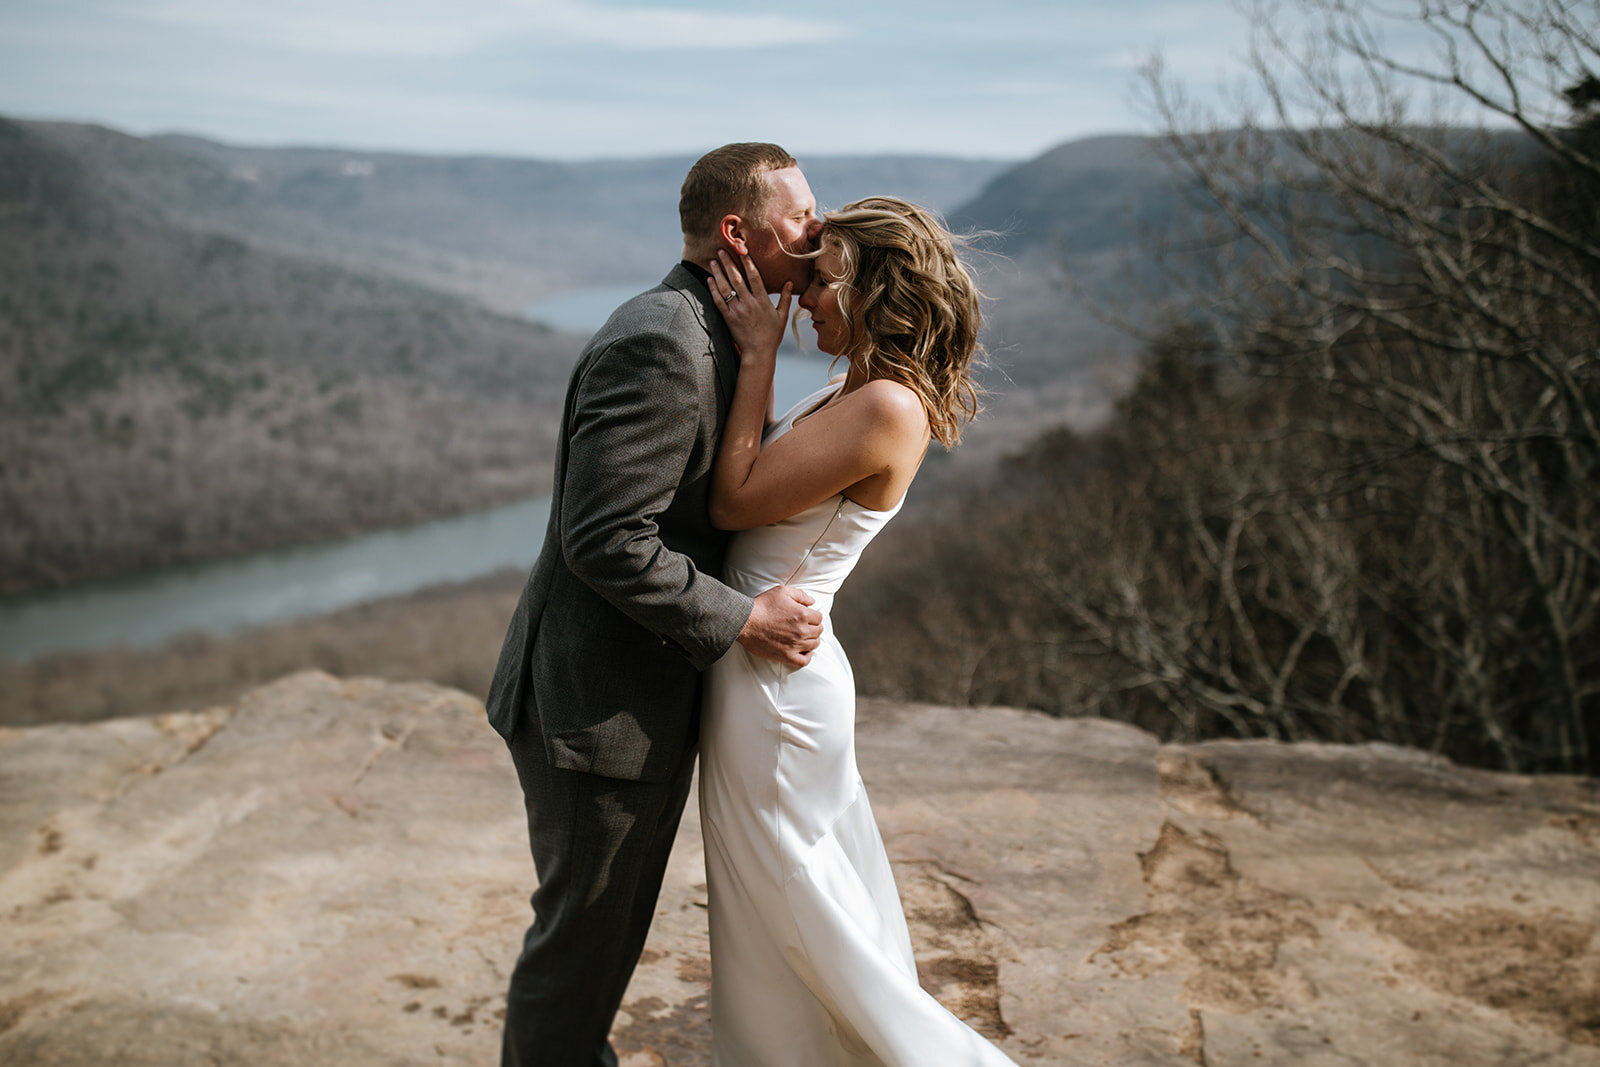 snoopers-rock-adventure-elopement-chattanooga-wedding-photographerfoster-falls-elopement-chattanooga-wedding-photographer-493_websize.jpg